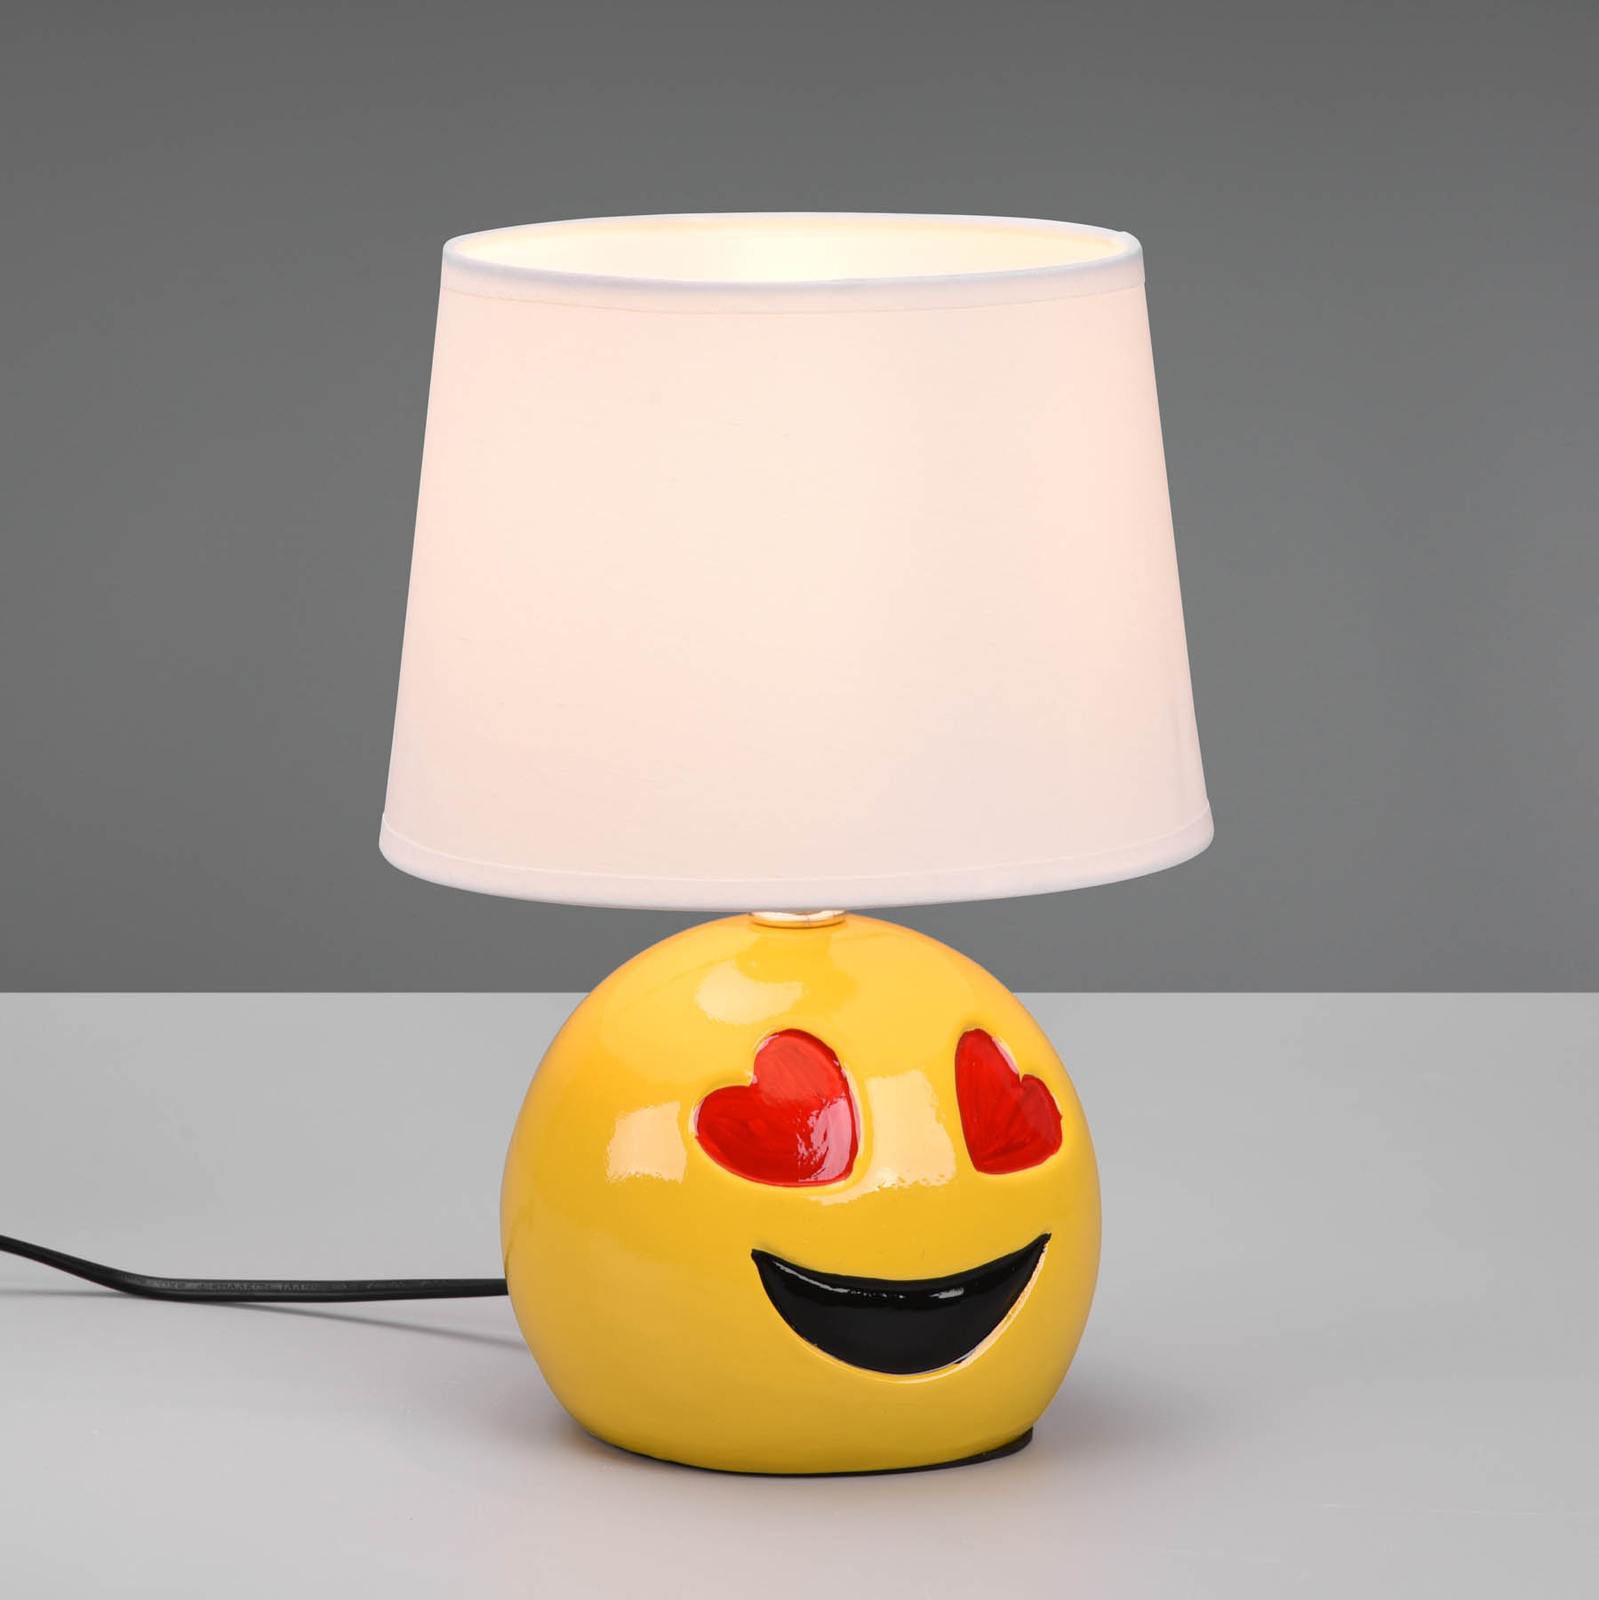 Lámpara de mesa Lovely con smiley, pantalla blanco